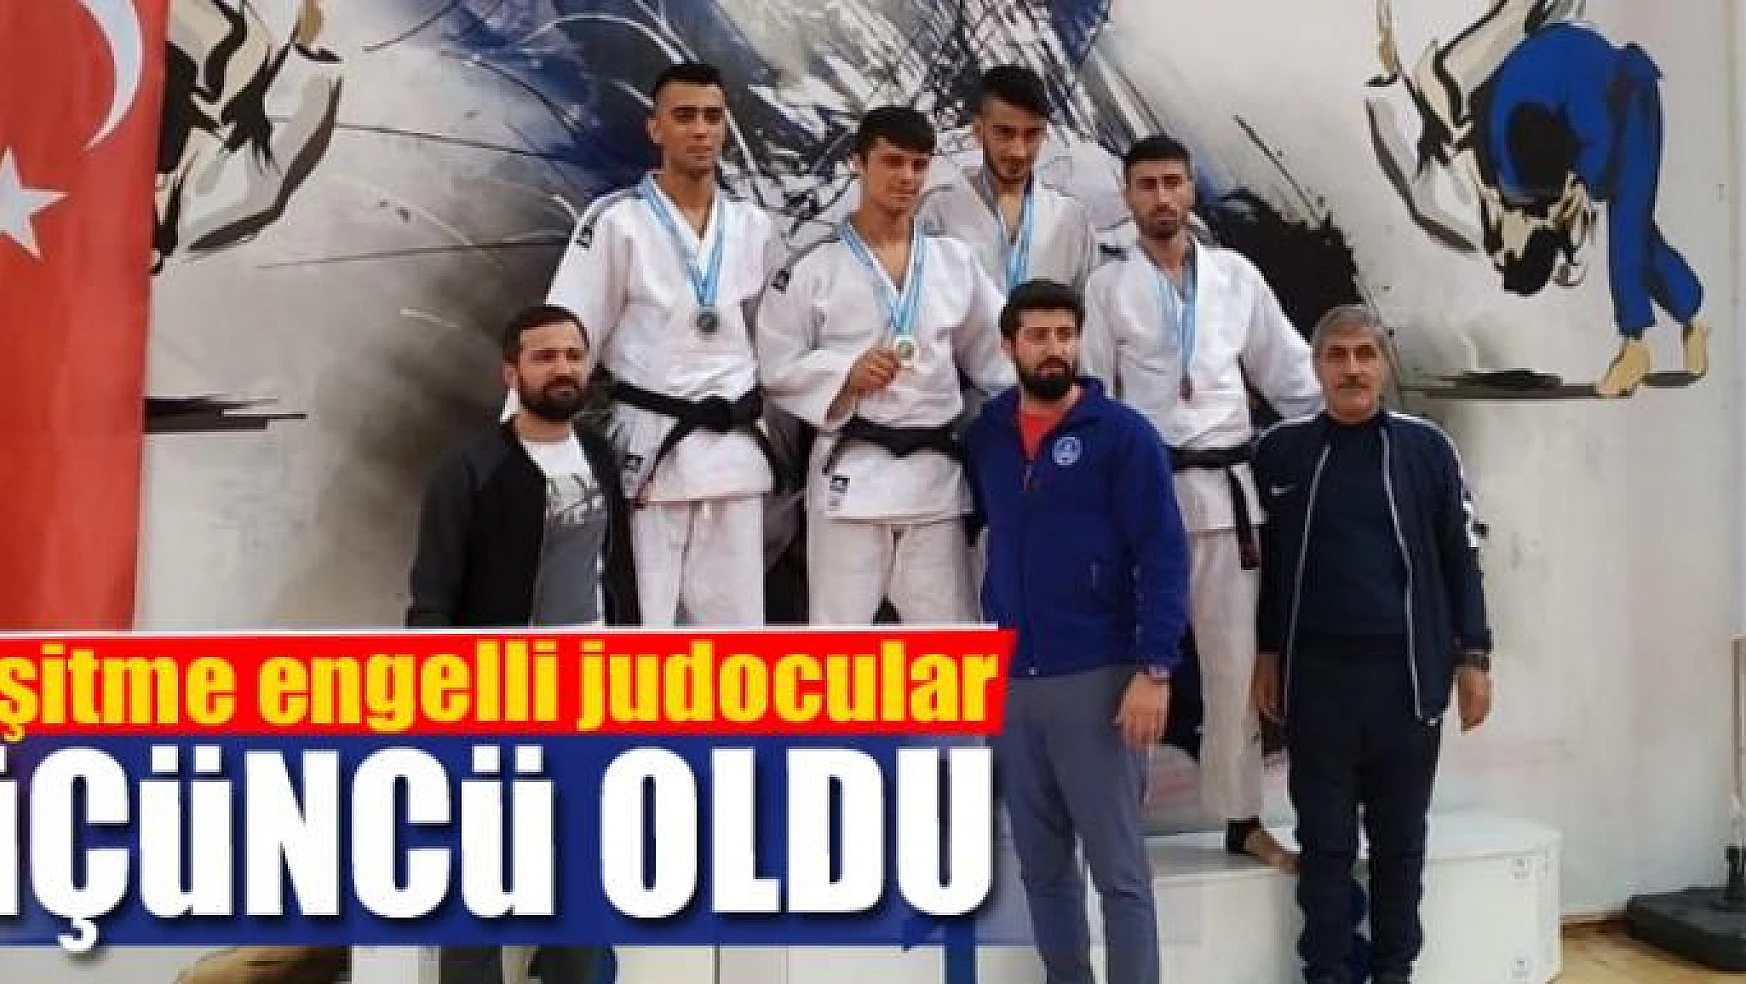 İşitme engelli judocular Türkiye üçüncüsü oldu